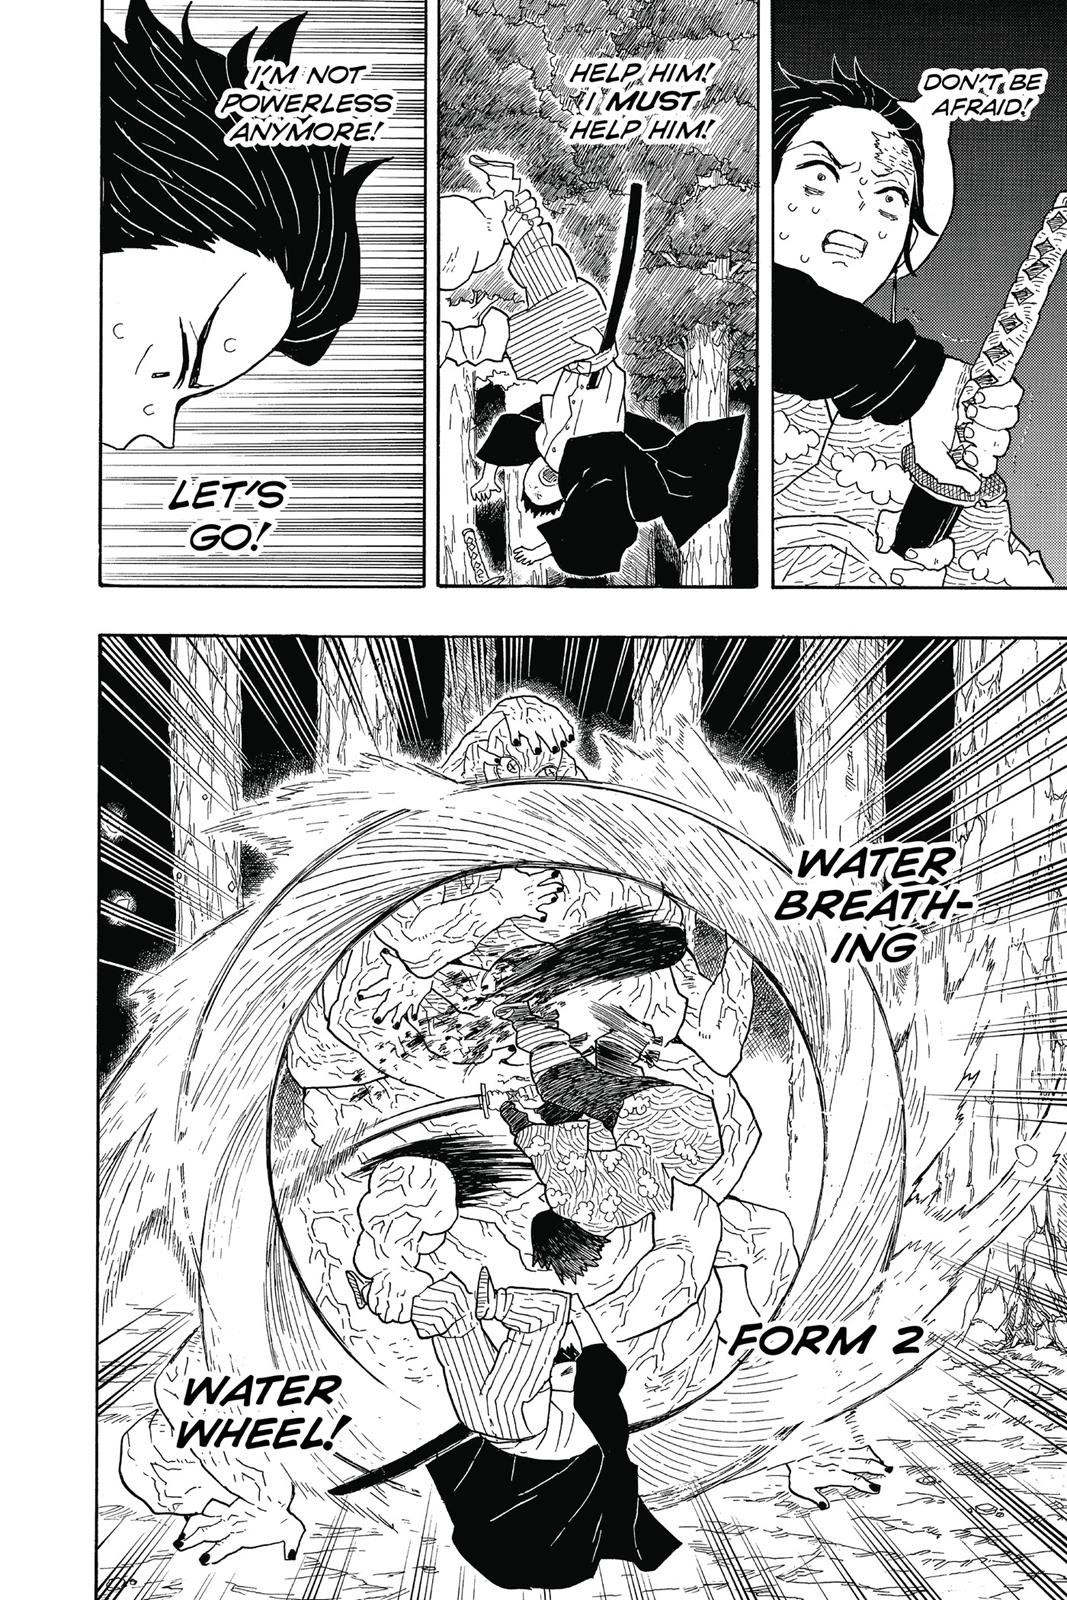 Demon Slayer Manga Manga Chapter - 6 - image 9